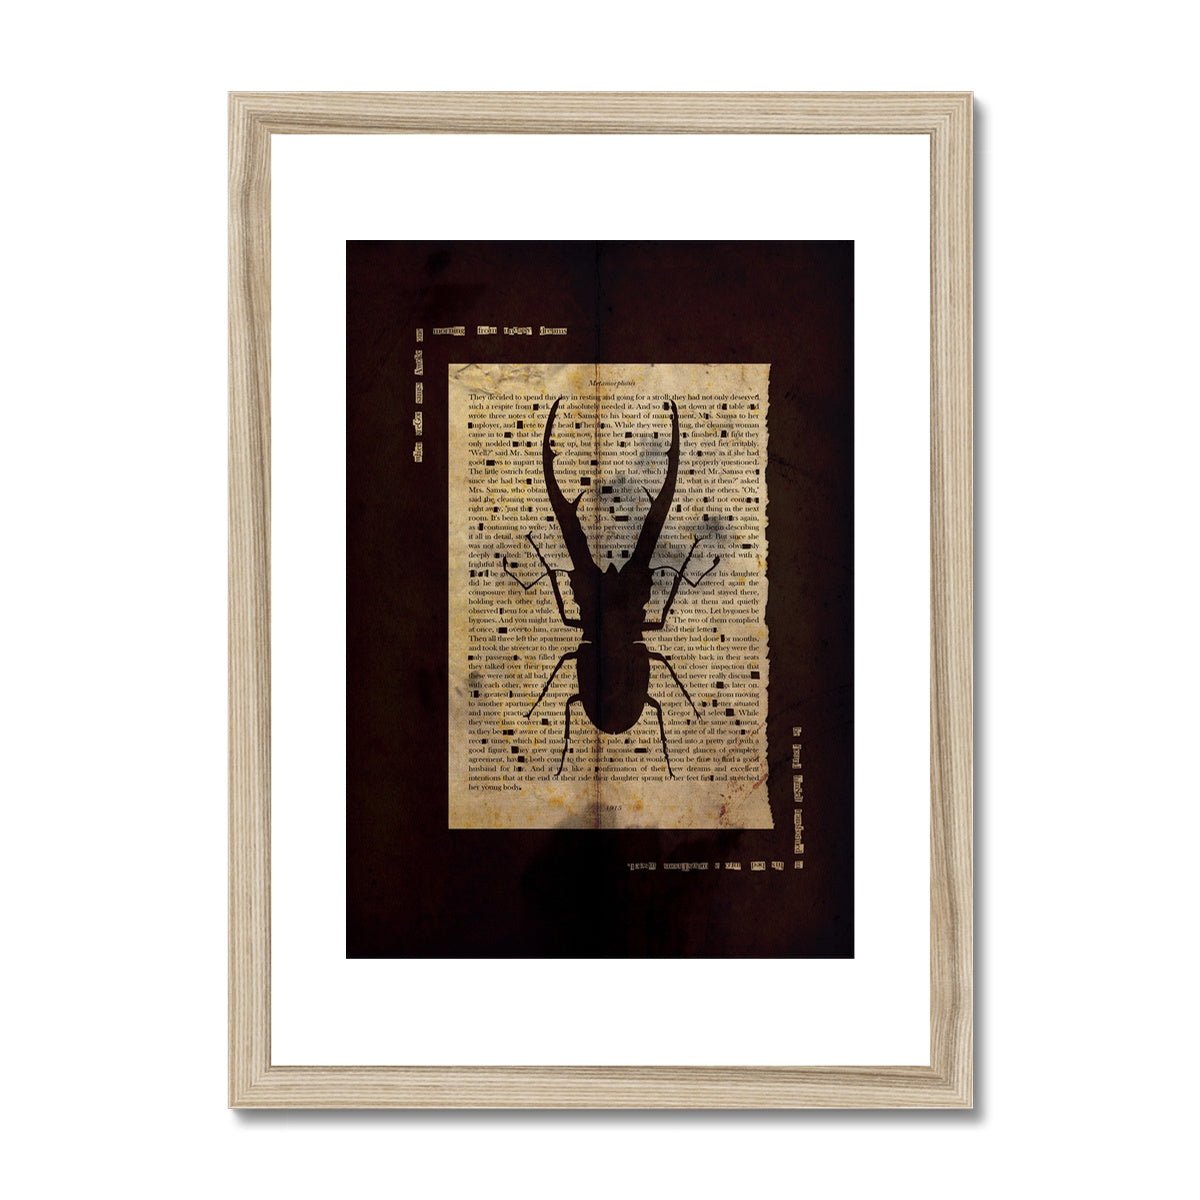 Metamorphosis Stag Beetle Black Grunge Framed & Mounted Print - James Voce // artist